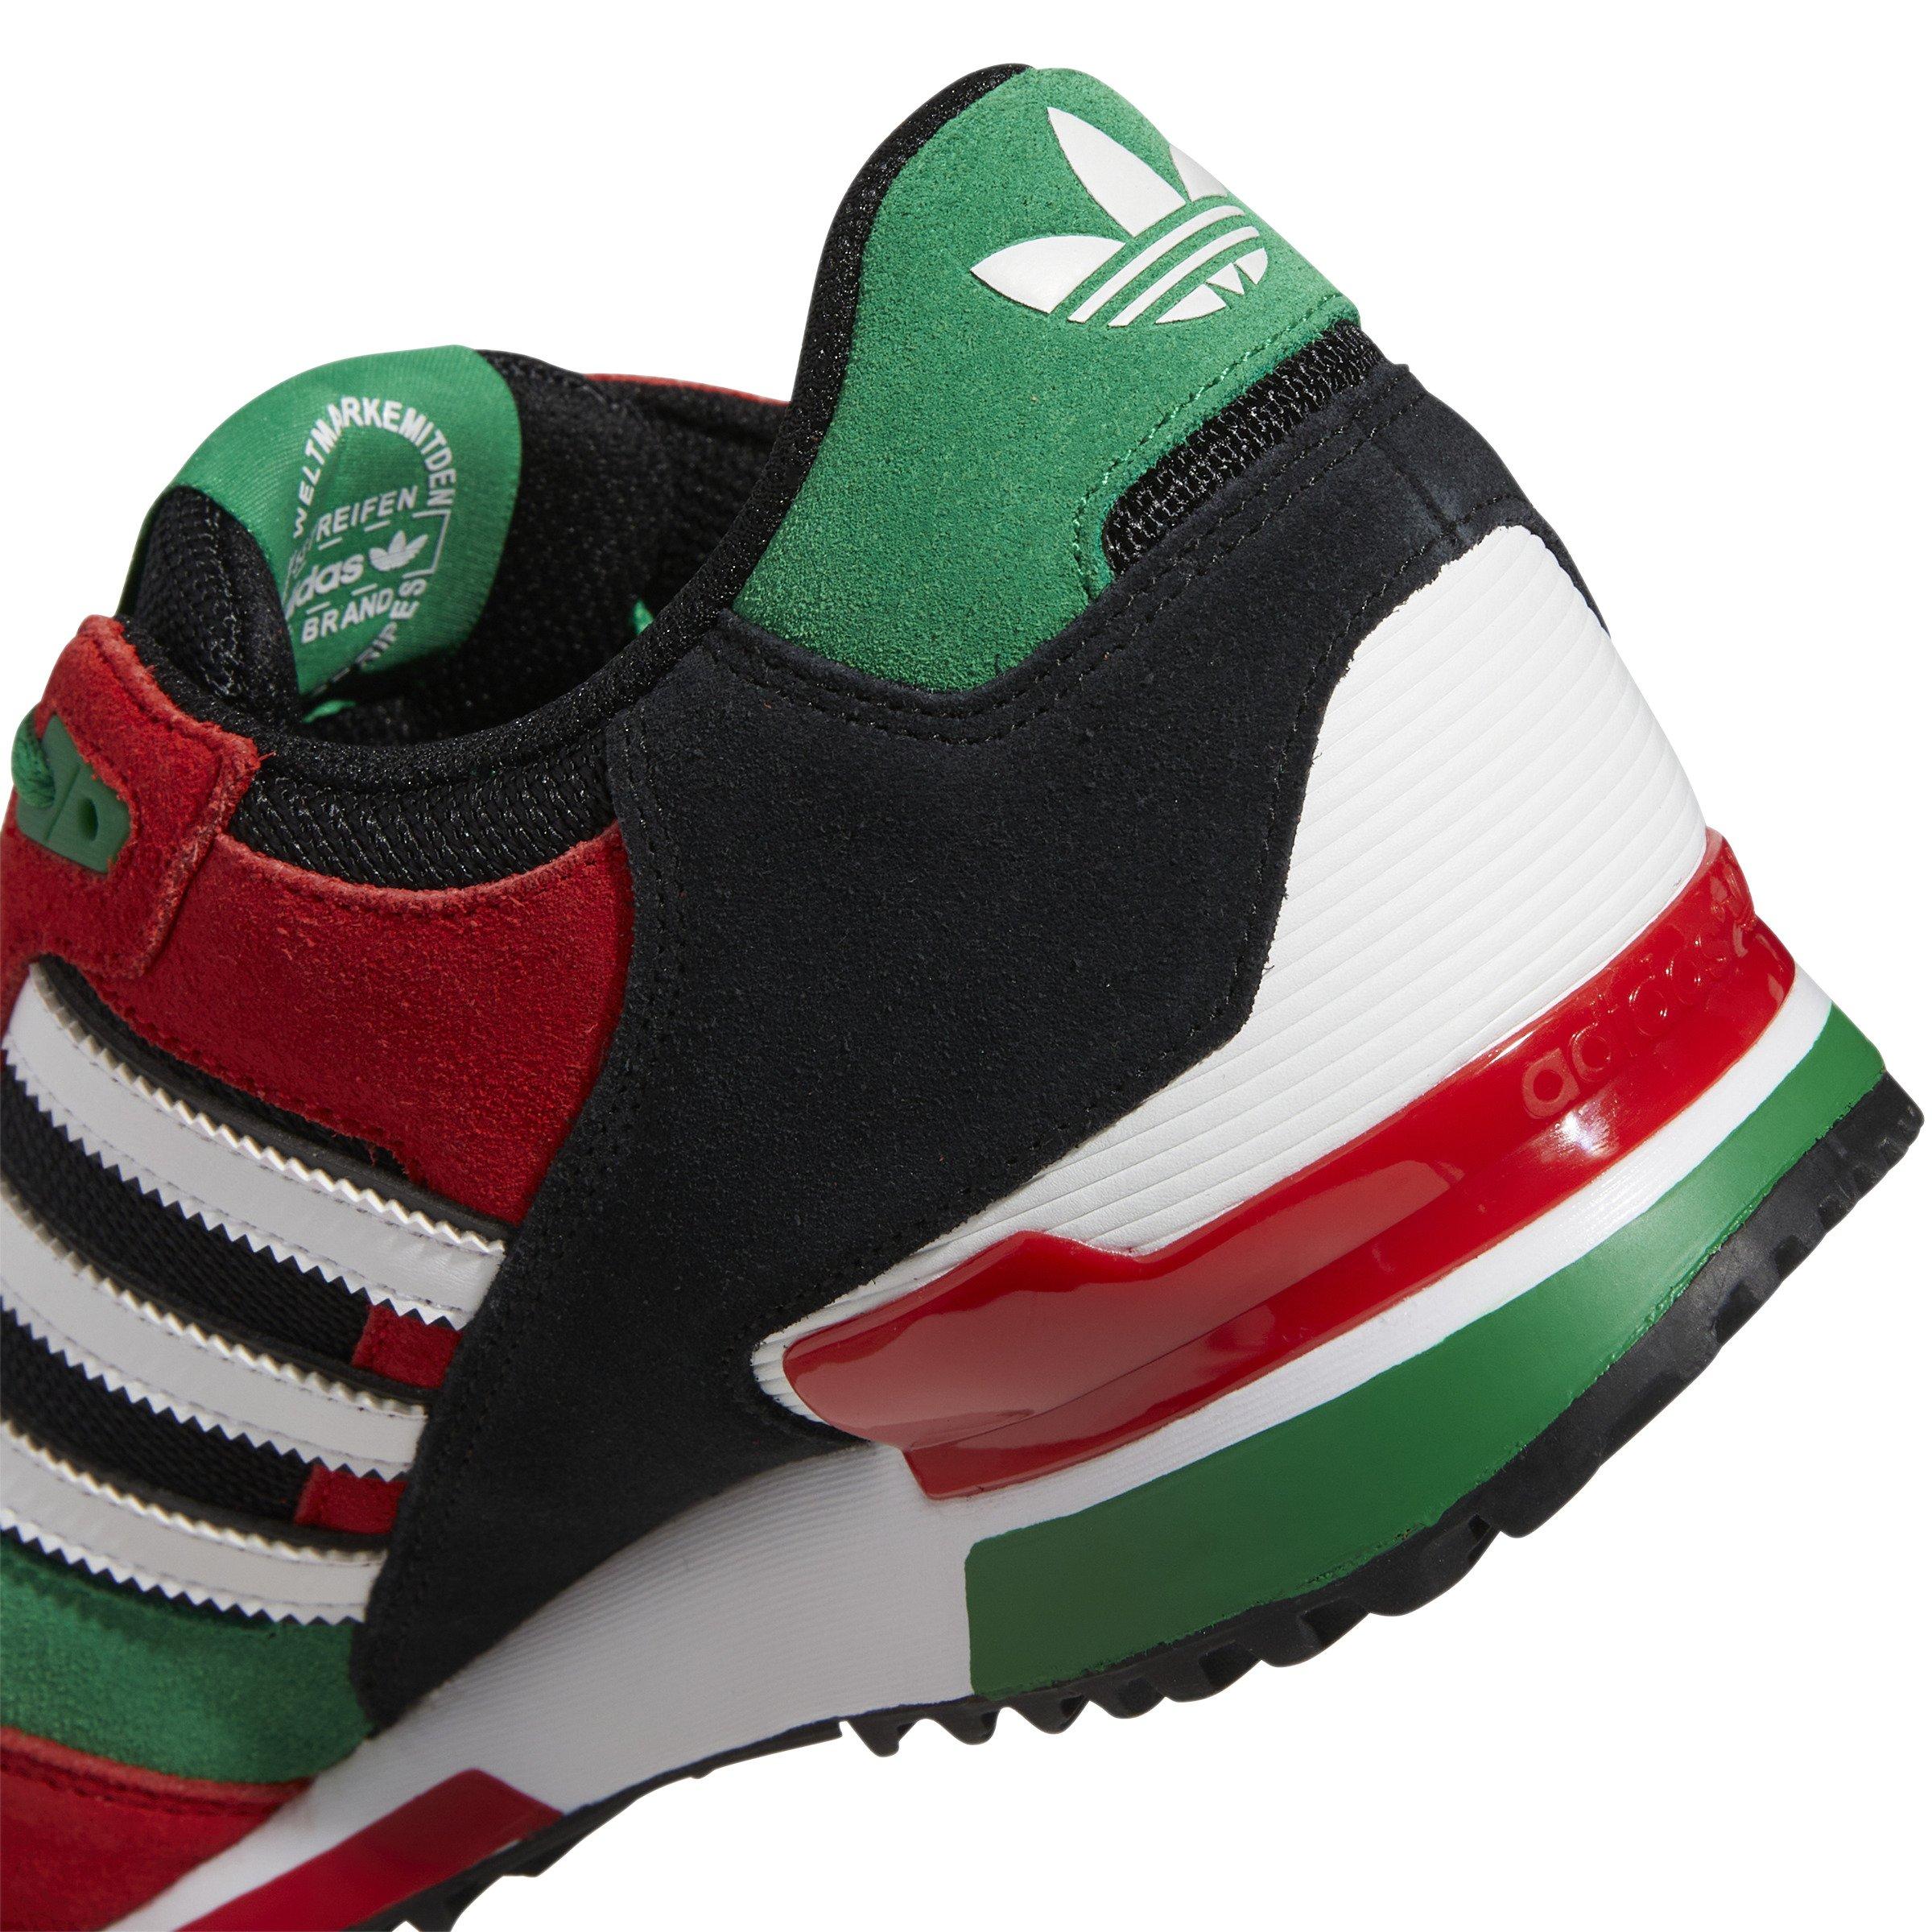 geïrriteerd raken Leggen Zwaaien adidas ZX750 "Core Black/Green/Red" Men's Shoe